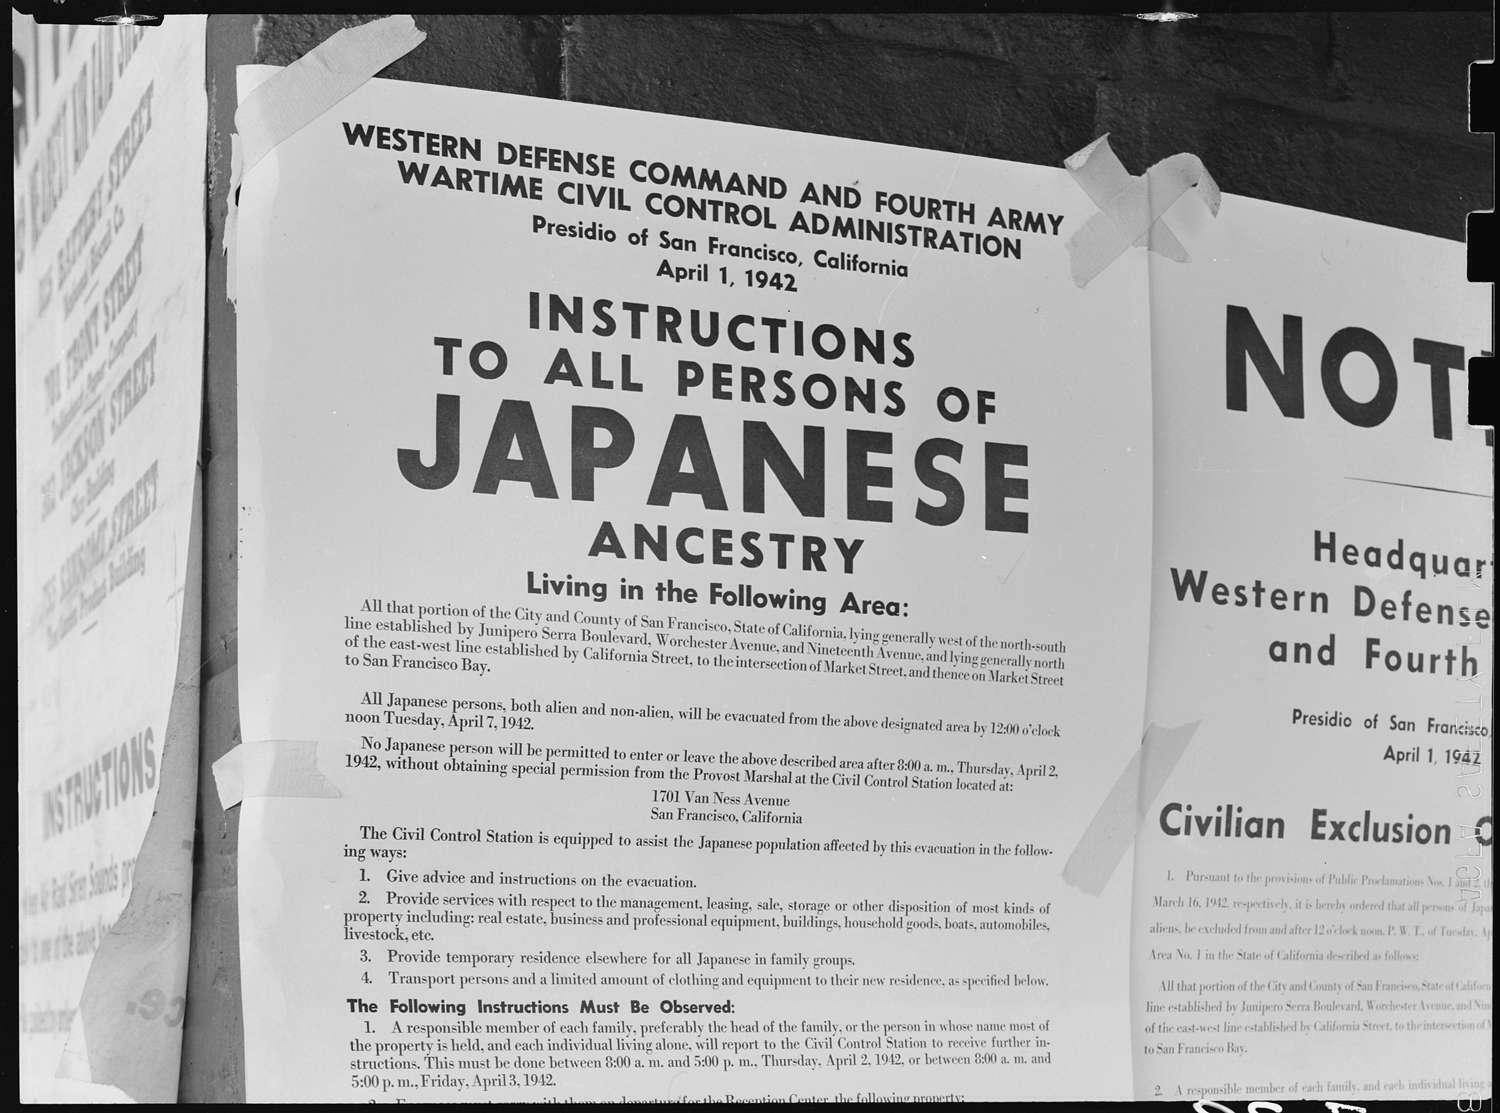 日系人を対象に、1942年4月7日正午が期限の「立ち退き命令」の掲示。同年4月11日、サンフランシスコにて。出典:National Archives 